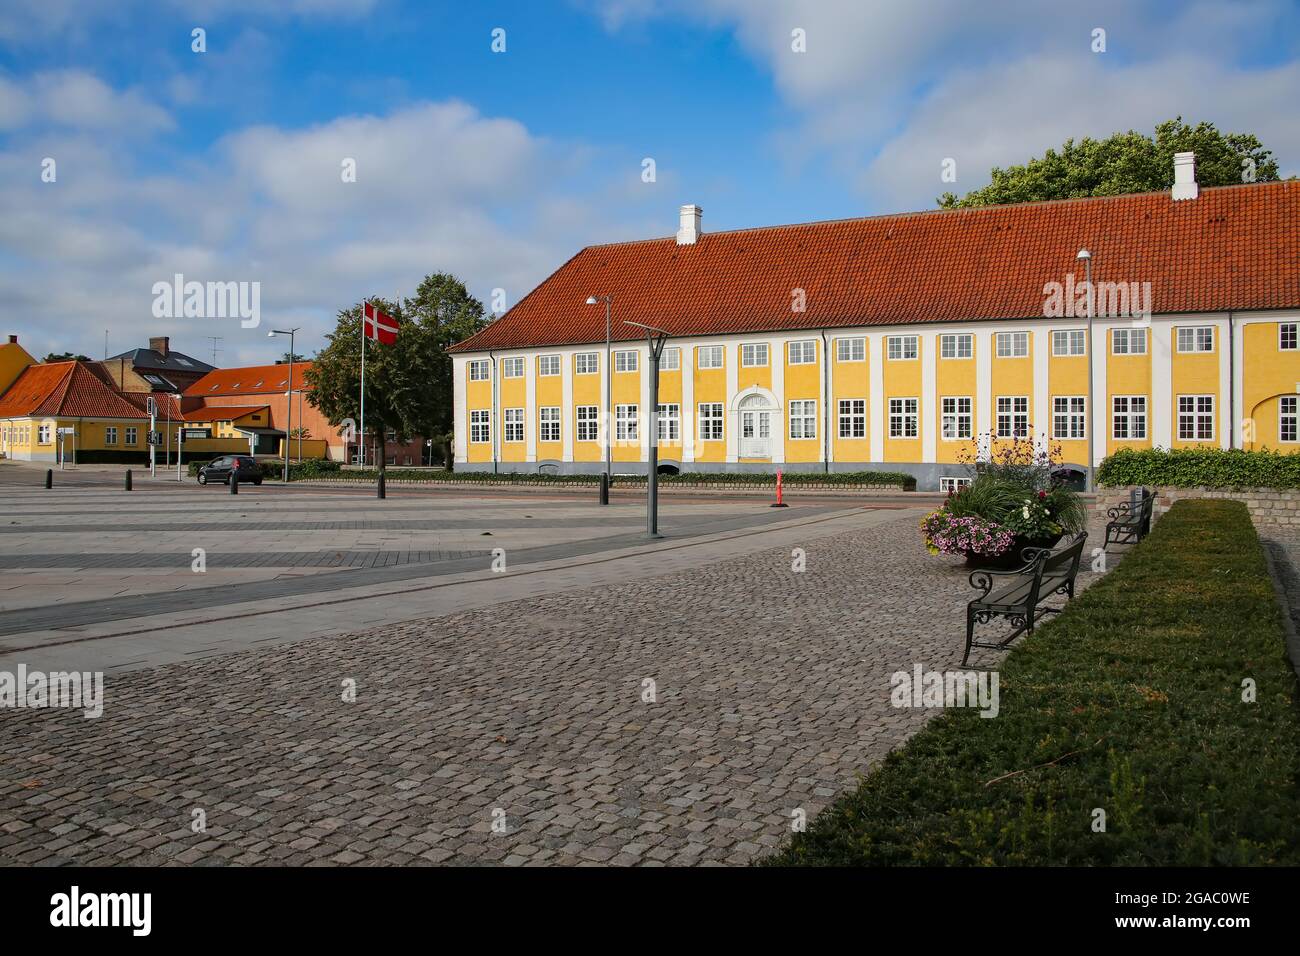 Das Kloster Kaalund (Kaalund Kloster oder Kalundborg Slots Ladegård) befindet sich im Bezirk Kalundborg, Dänemark. Historisches gelb-weißes Gebäude. Stockfoto